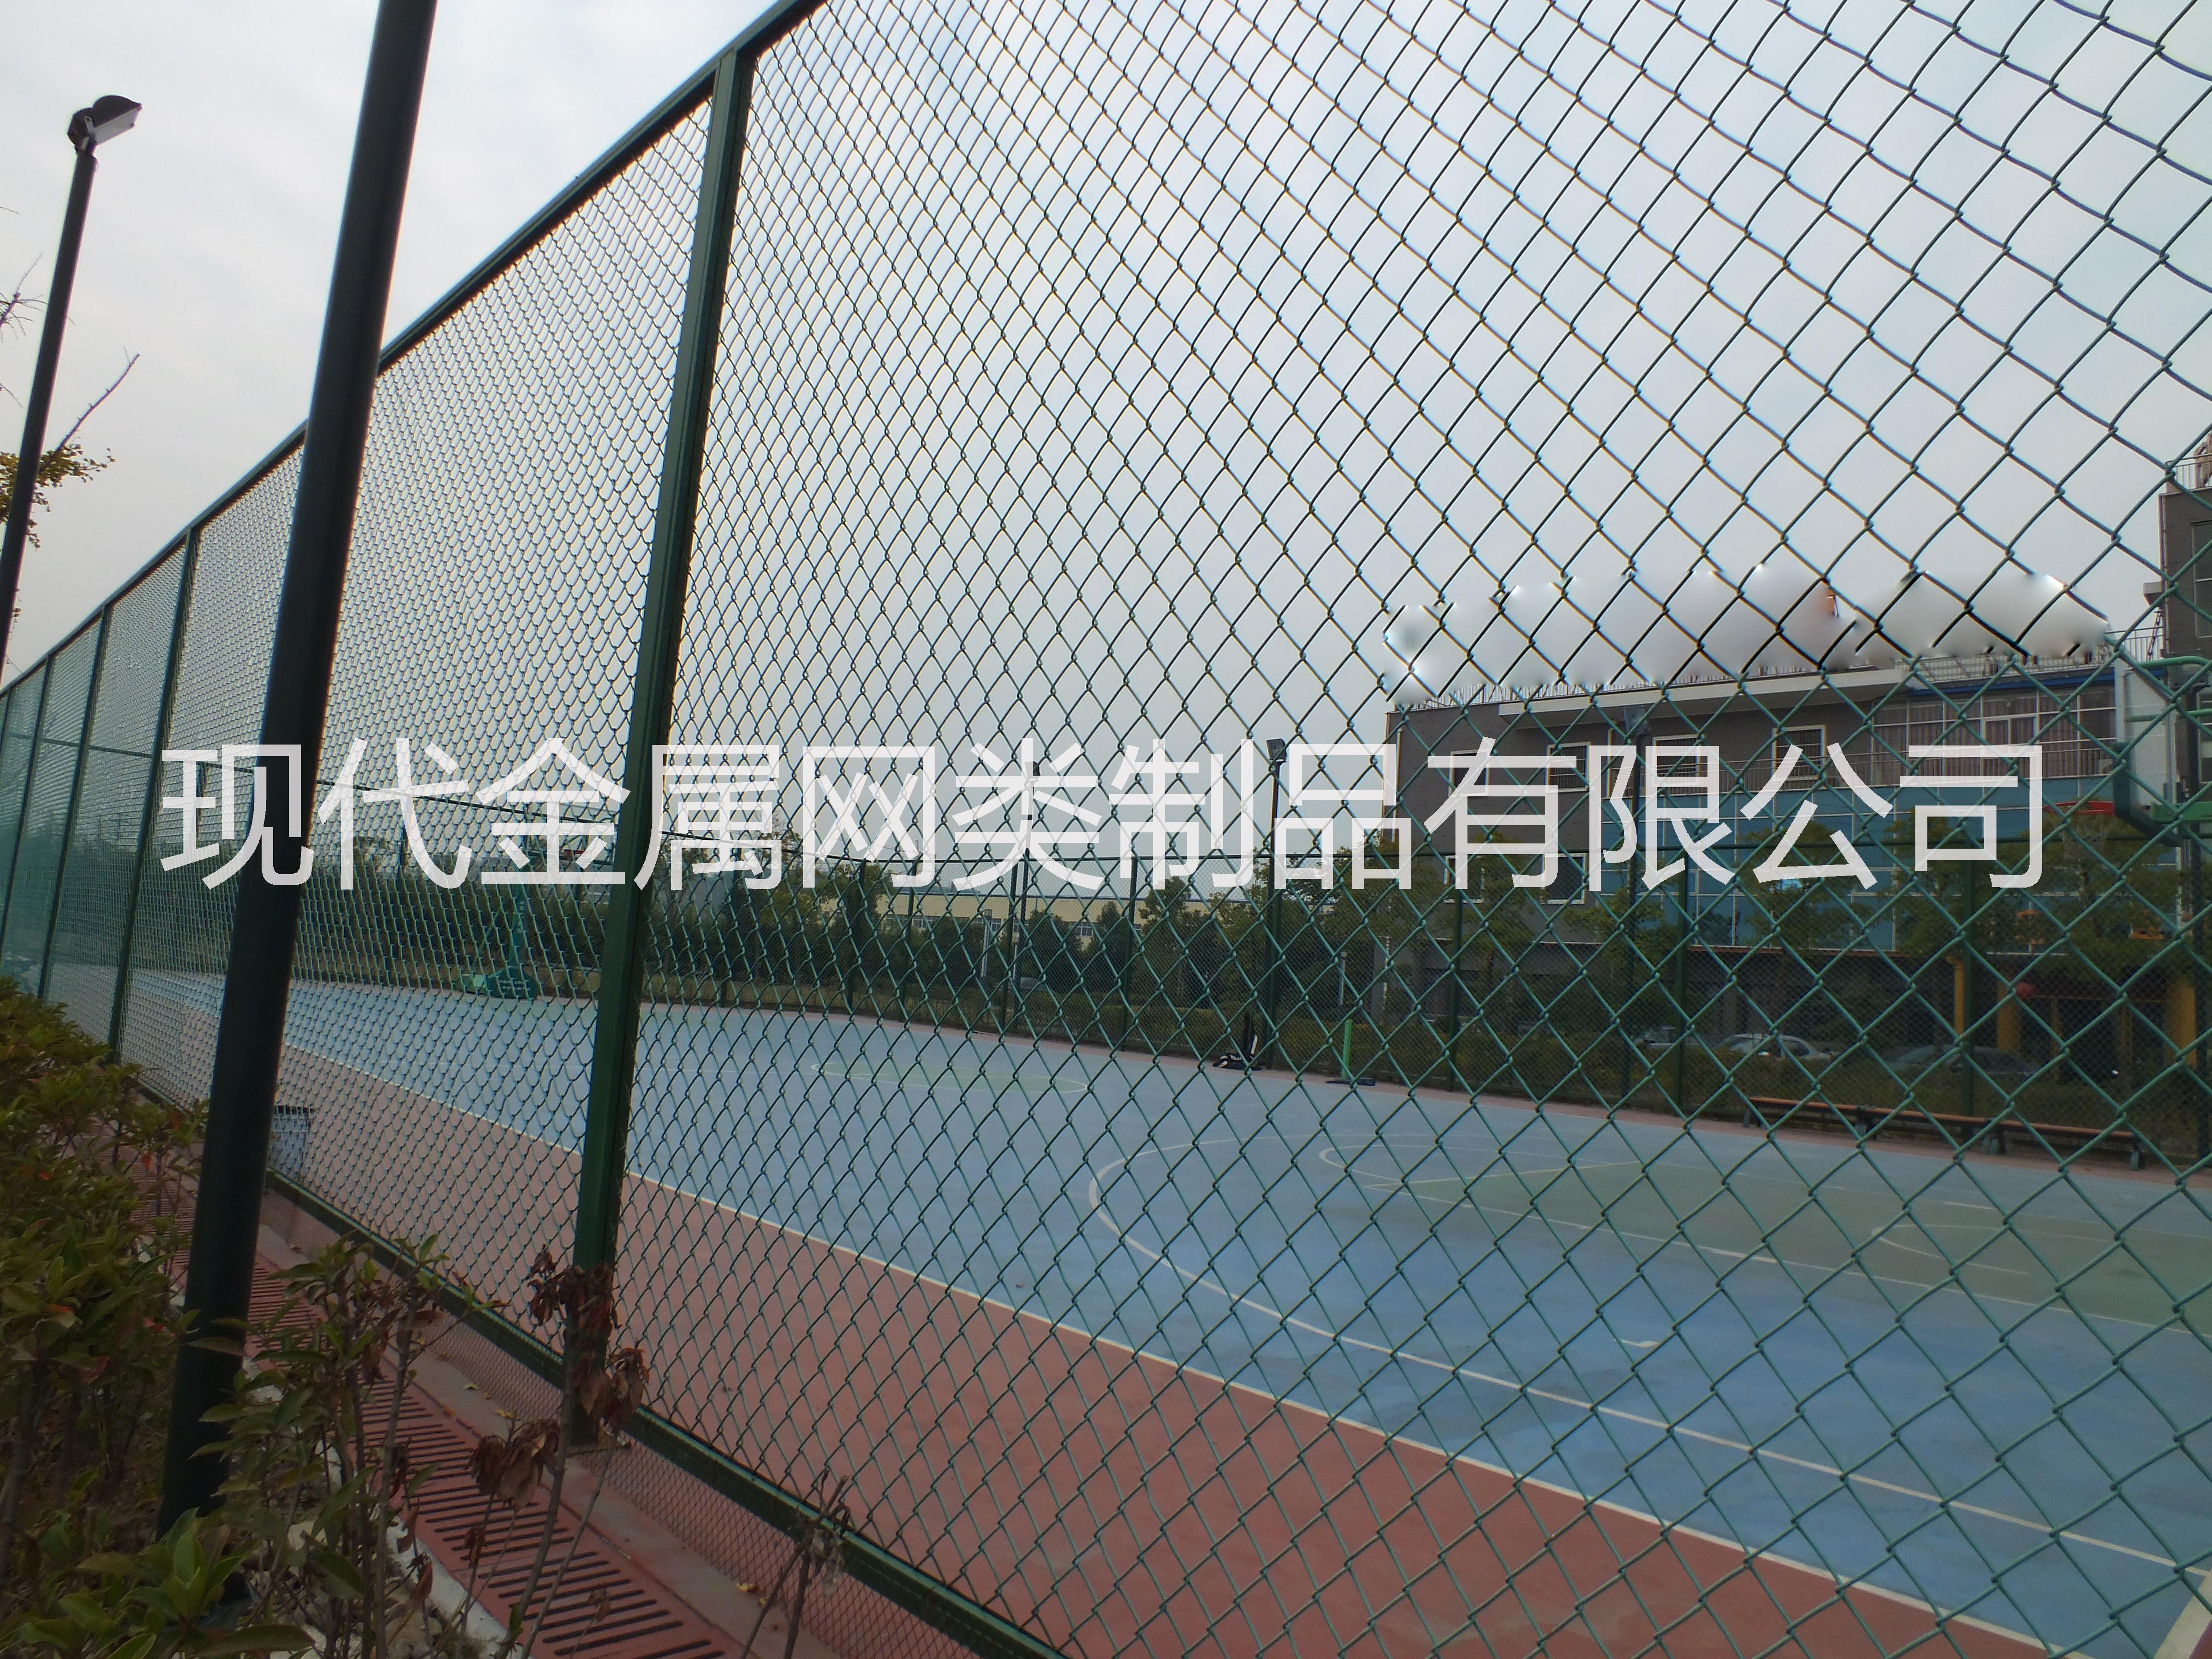 安平县厂家供应、直销、现货体育场围网、运动场围网、篮球护栏网、质量好优质 运动场护栏网